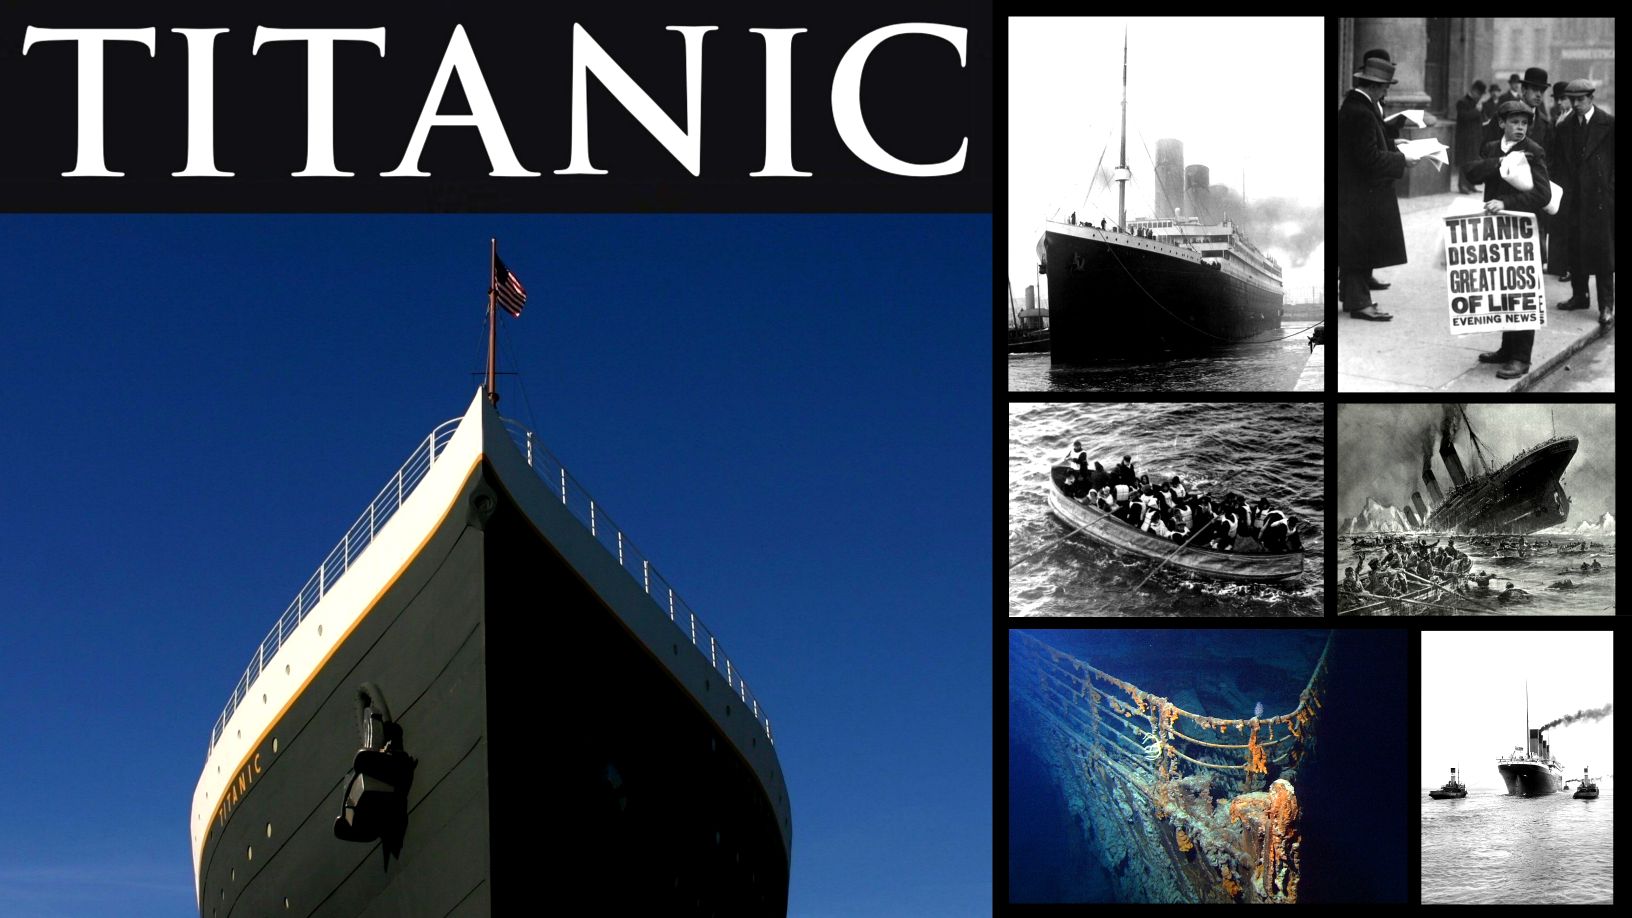 De mörka hemligheterna och några lite kända fakta bakom Titanic-katastrofen 1